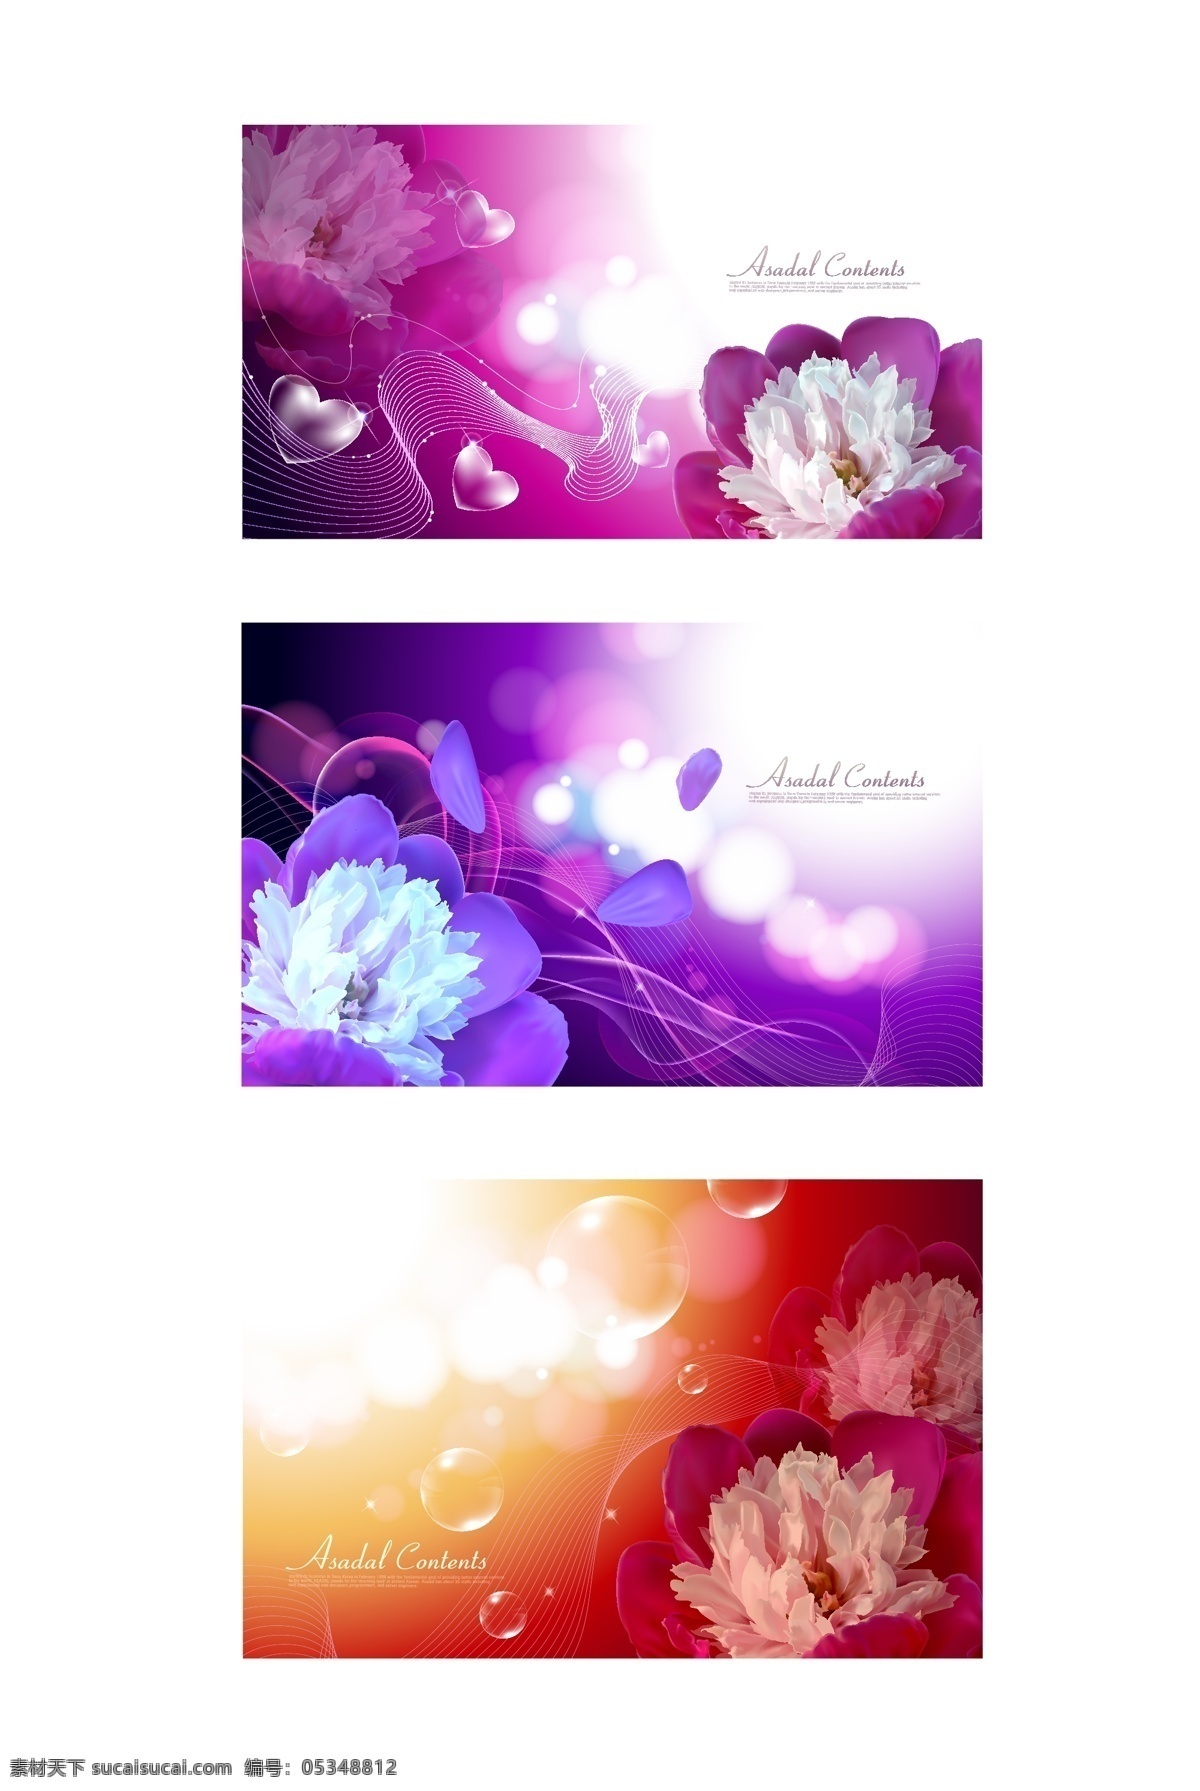 精美 幻彩 花卉 ai格式素材 矢量模板 精美幻彩花卉 适用 矢量图 花纹花边